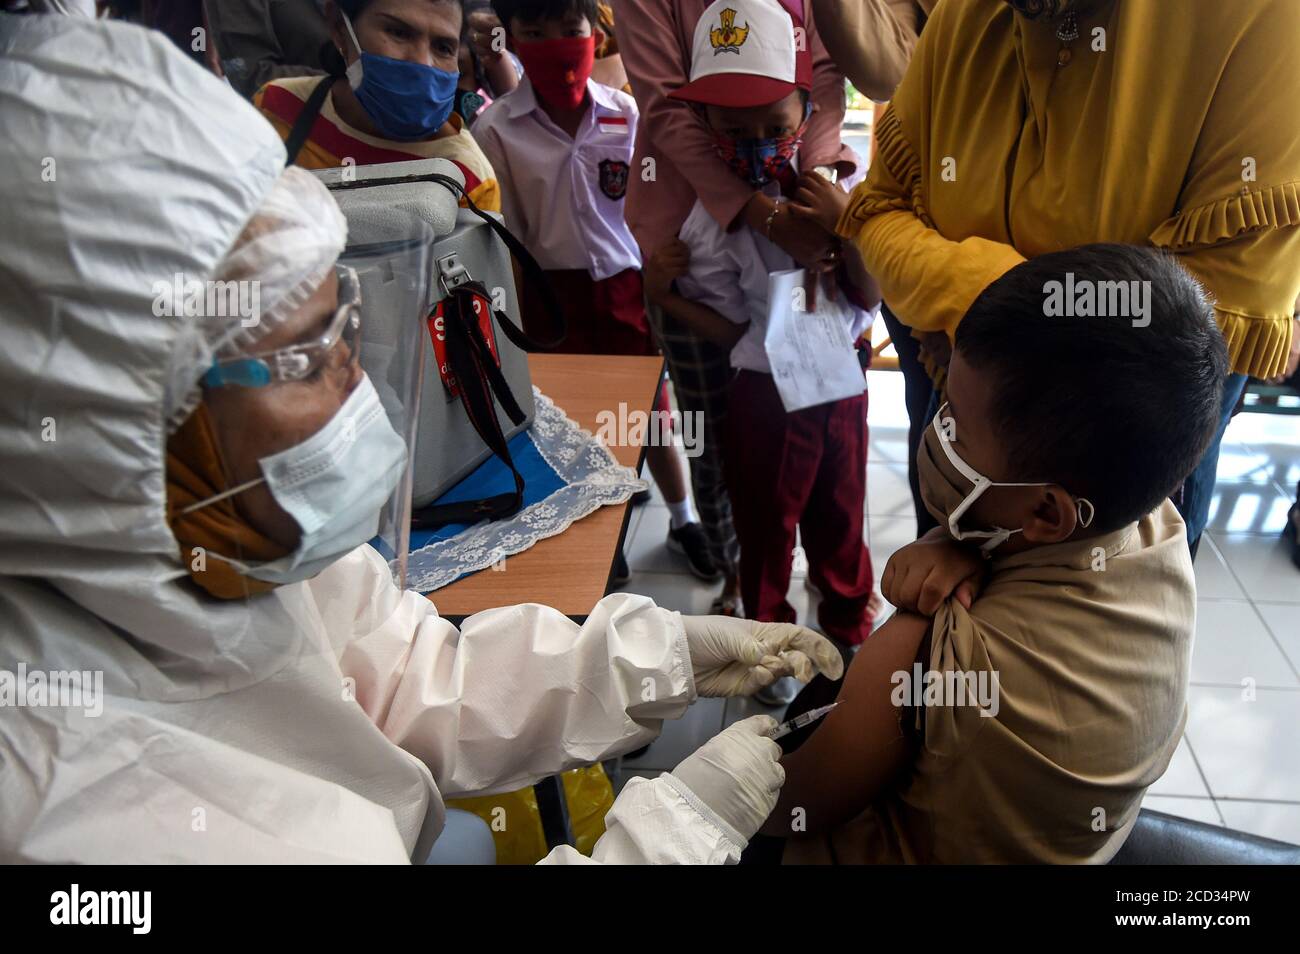 (200826) -- JAKARTA, 26 agosto 2020 (Xinhua) -- uno studente elementare riceve un vaccino contro il morbillo-rosolia (MR) effettuato da un operatore sanitario in seguito all'epidemia di COVID-19 a Giacarta, Indonesia, 26 agosto 2020. I vaccini contro il morbillo-rosolia (MR) vengono somministrati ai giovani come parte del programma del governo indonesiano per offrire un'adeguata immunizzazione dei bambini scolastici. (Xinhua/Agung Kuncahya B.) Foto Stock